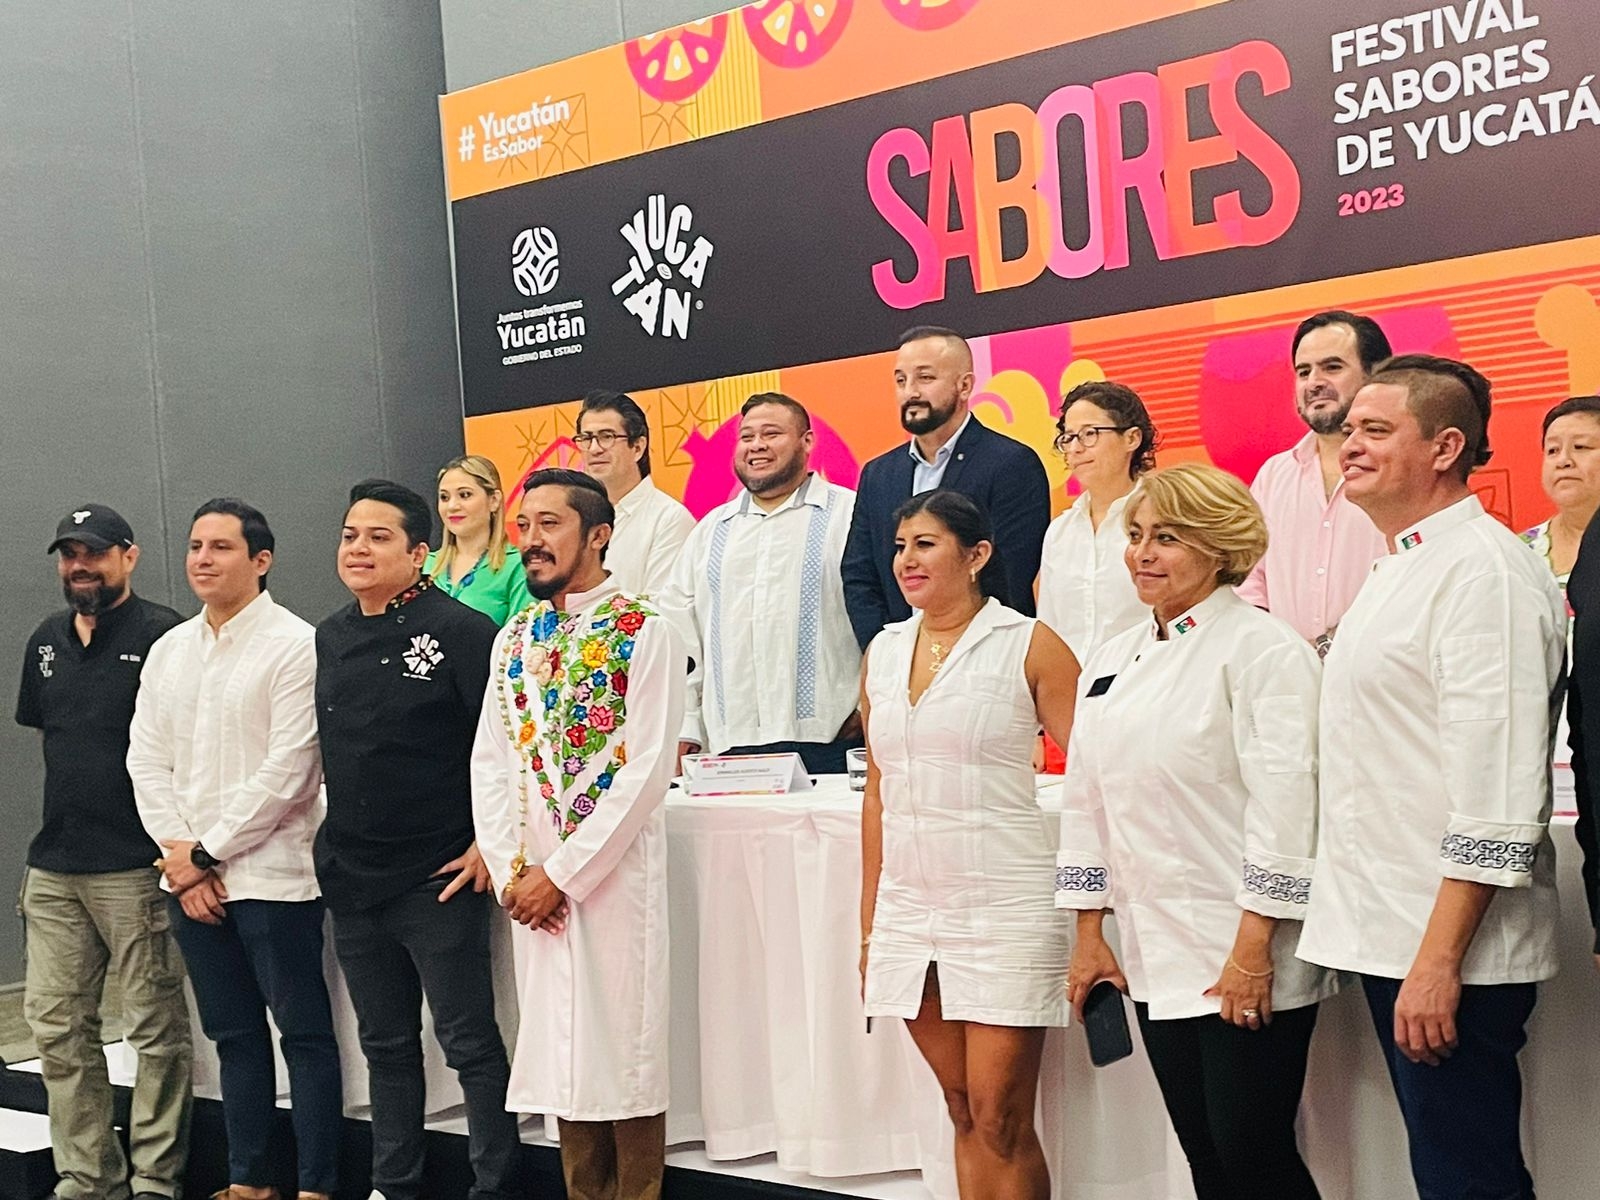 El Festival Sabores de Yucatán 2023 tendrá varias actividades en Mérida